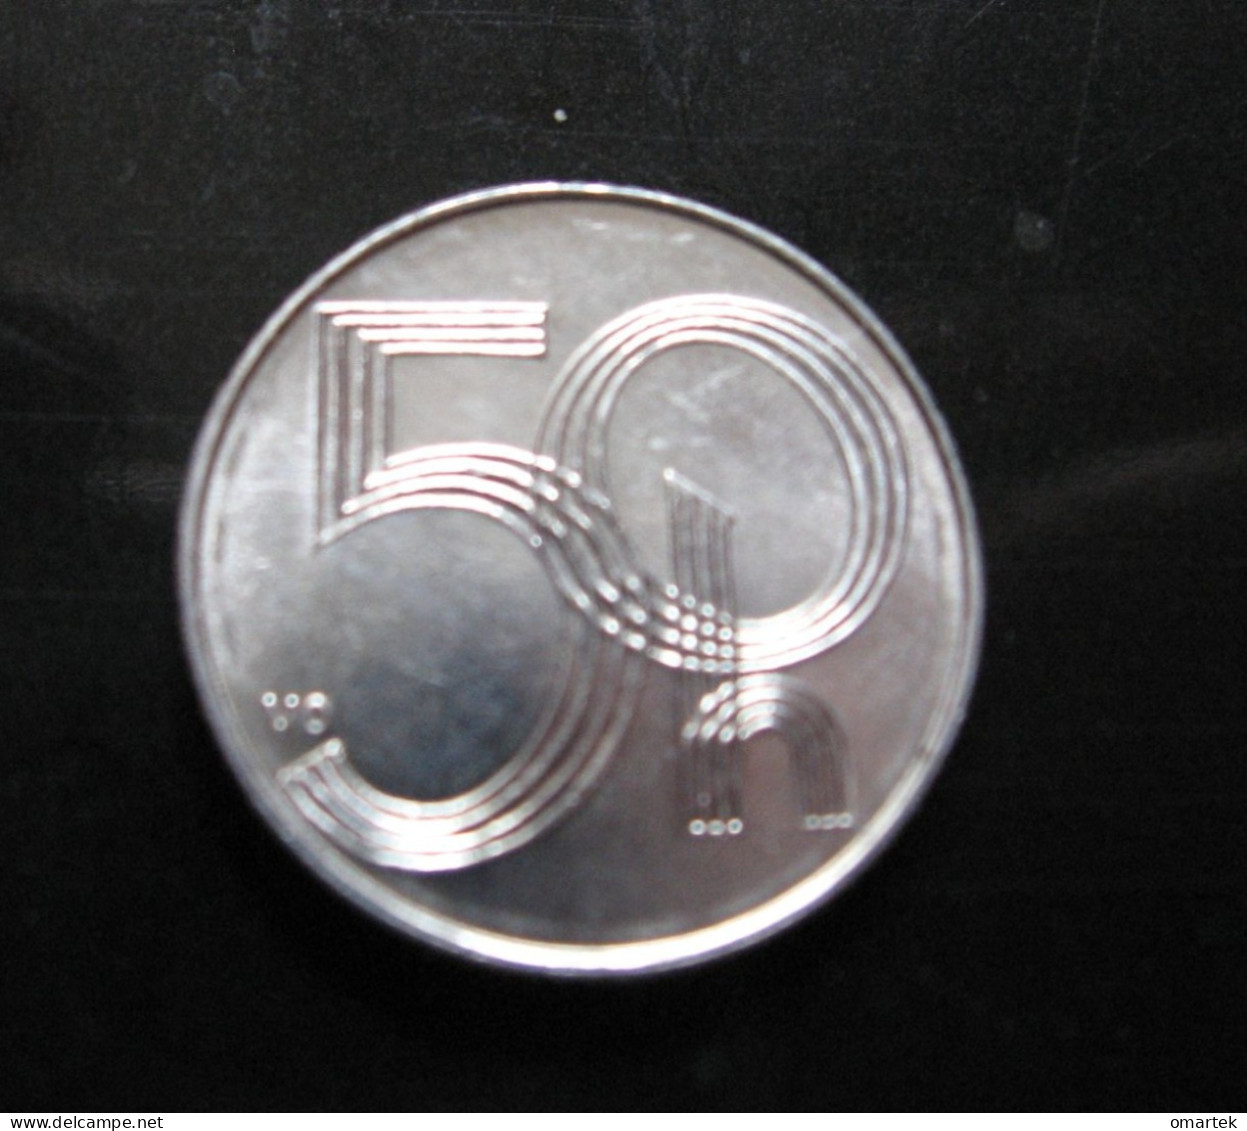 Czech Republic 1997 50 H Umlaufmünze Circulating Coin .Tschechische Republik - Tsjechië